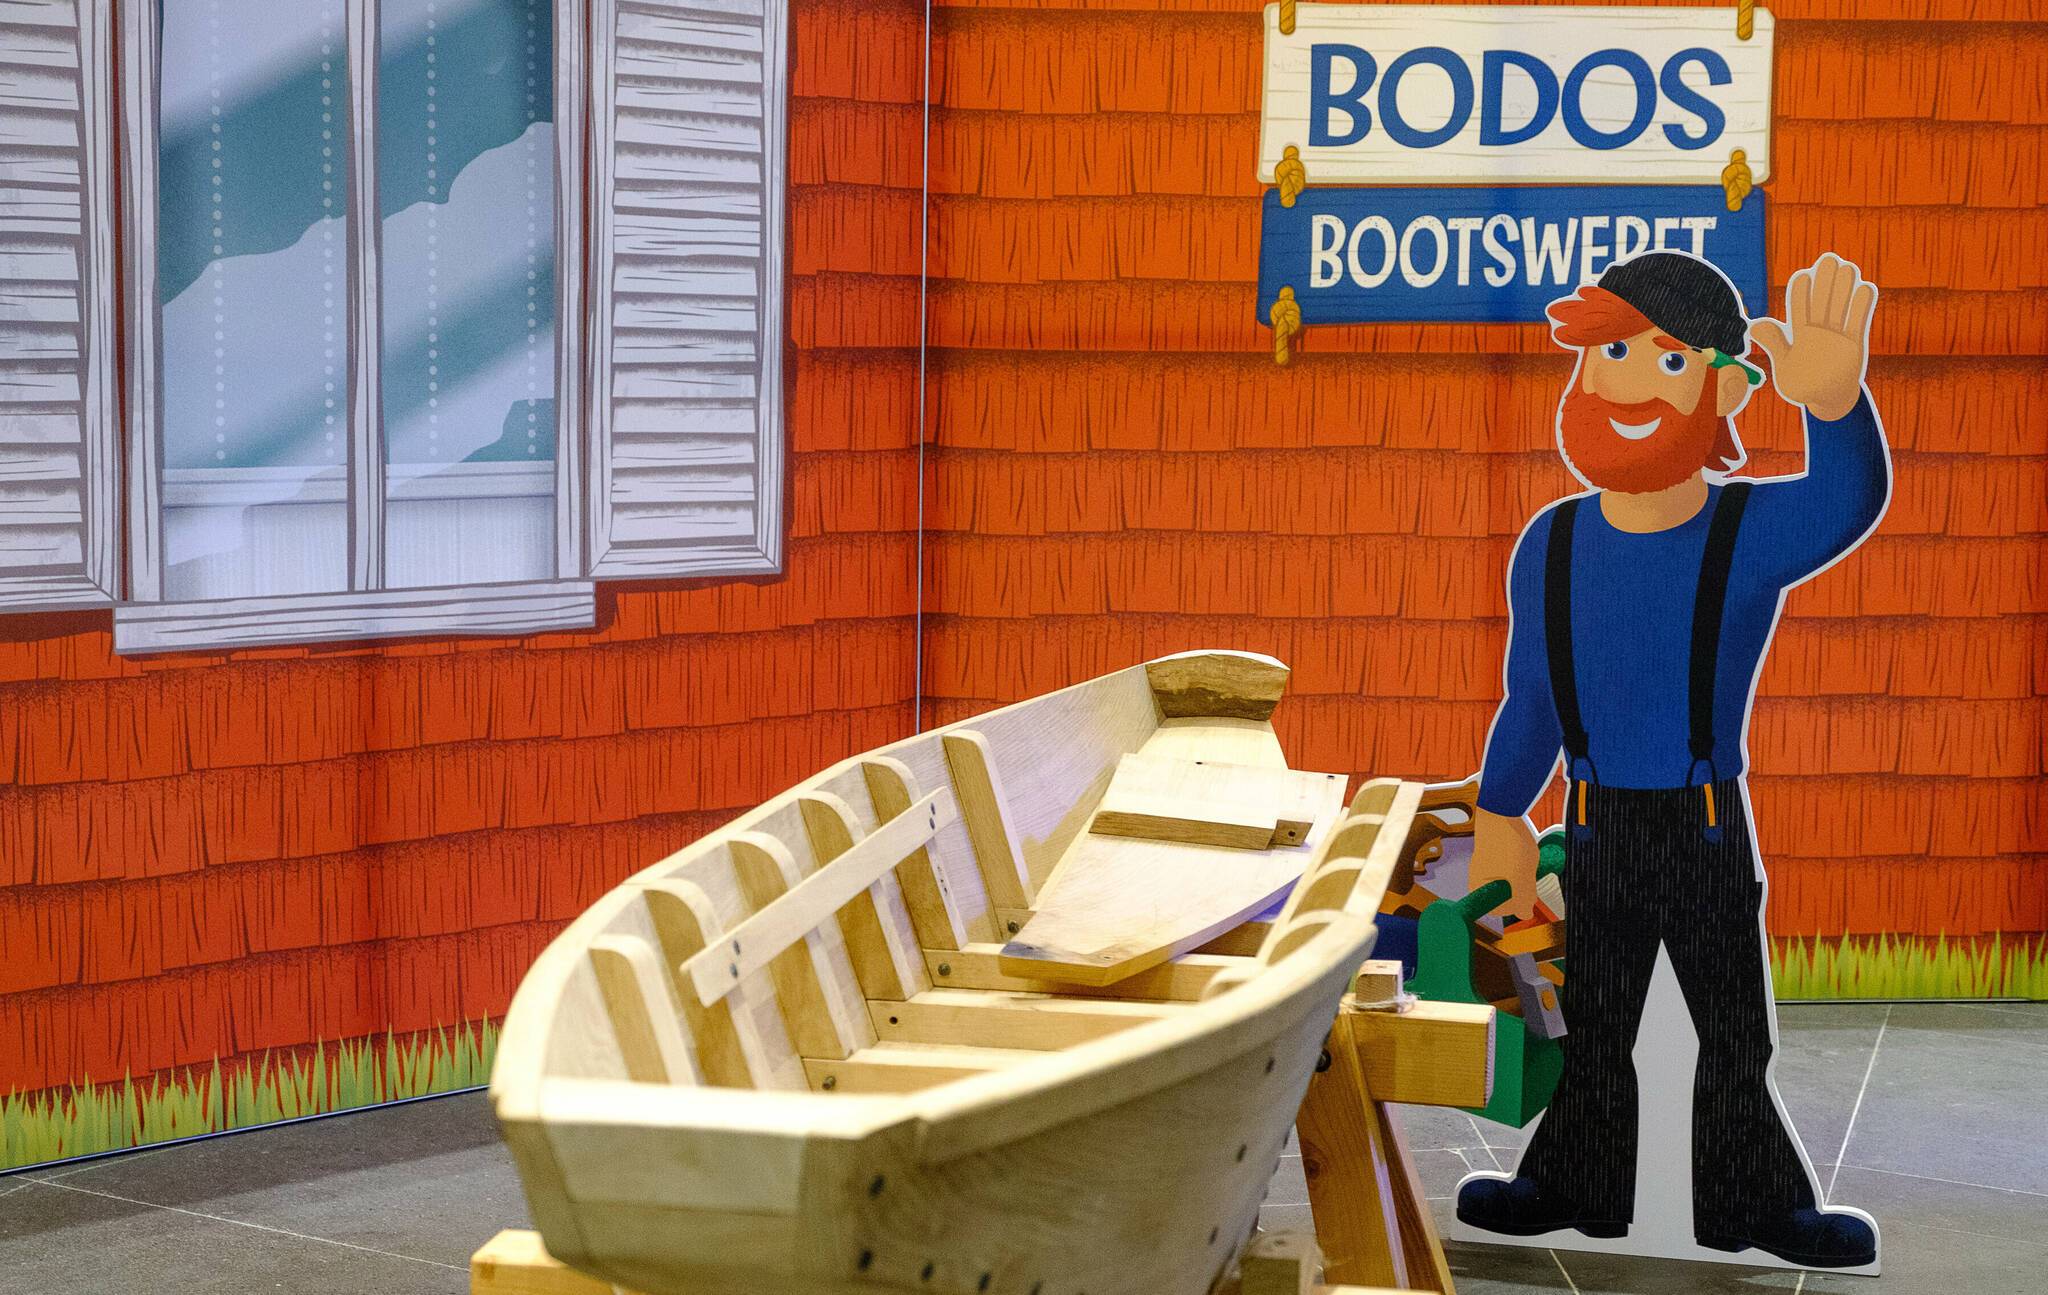   Die Ausstellung „Bodos Bootswerft“ lädt zum Rundgang im Schifffahrtsmuseum ein.   